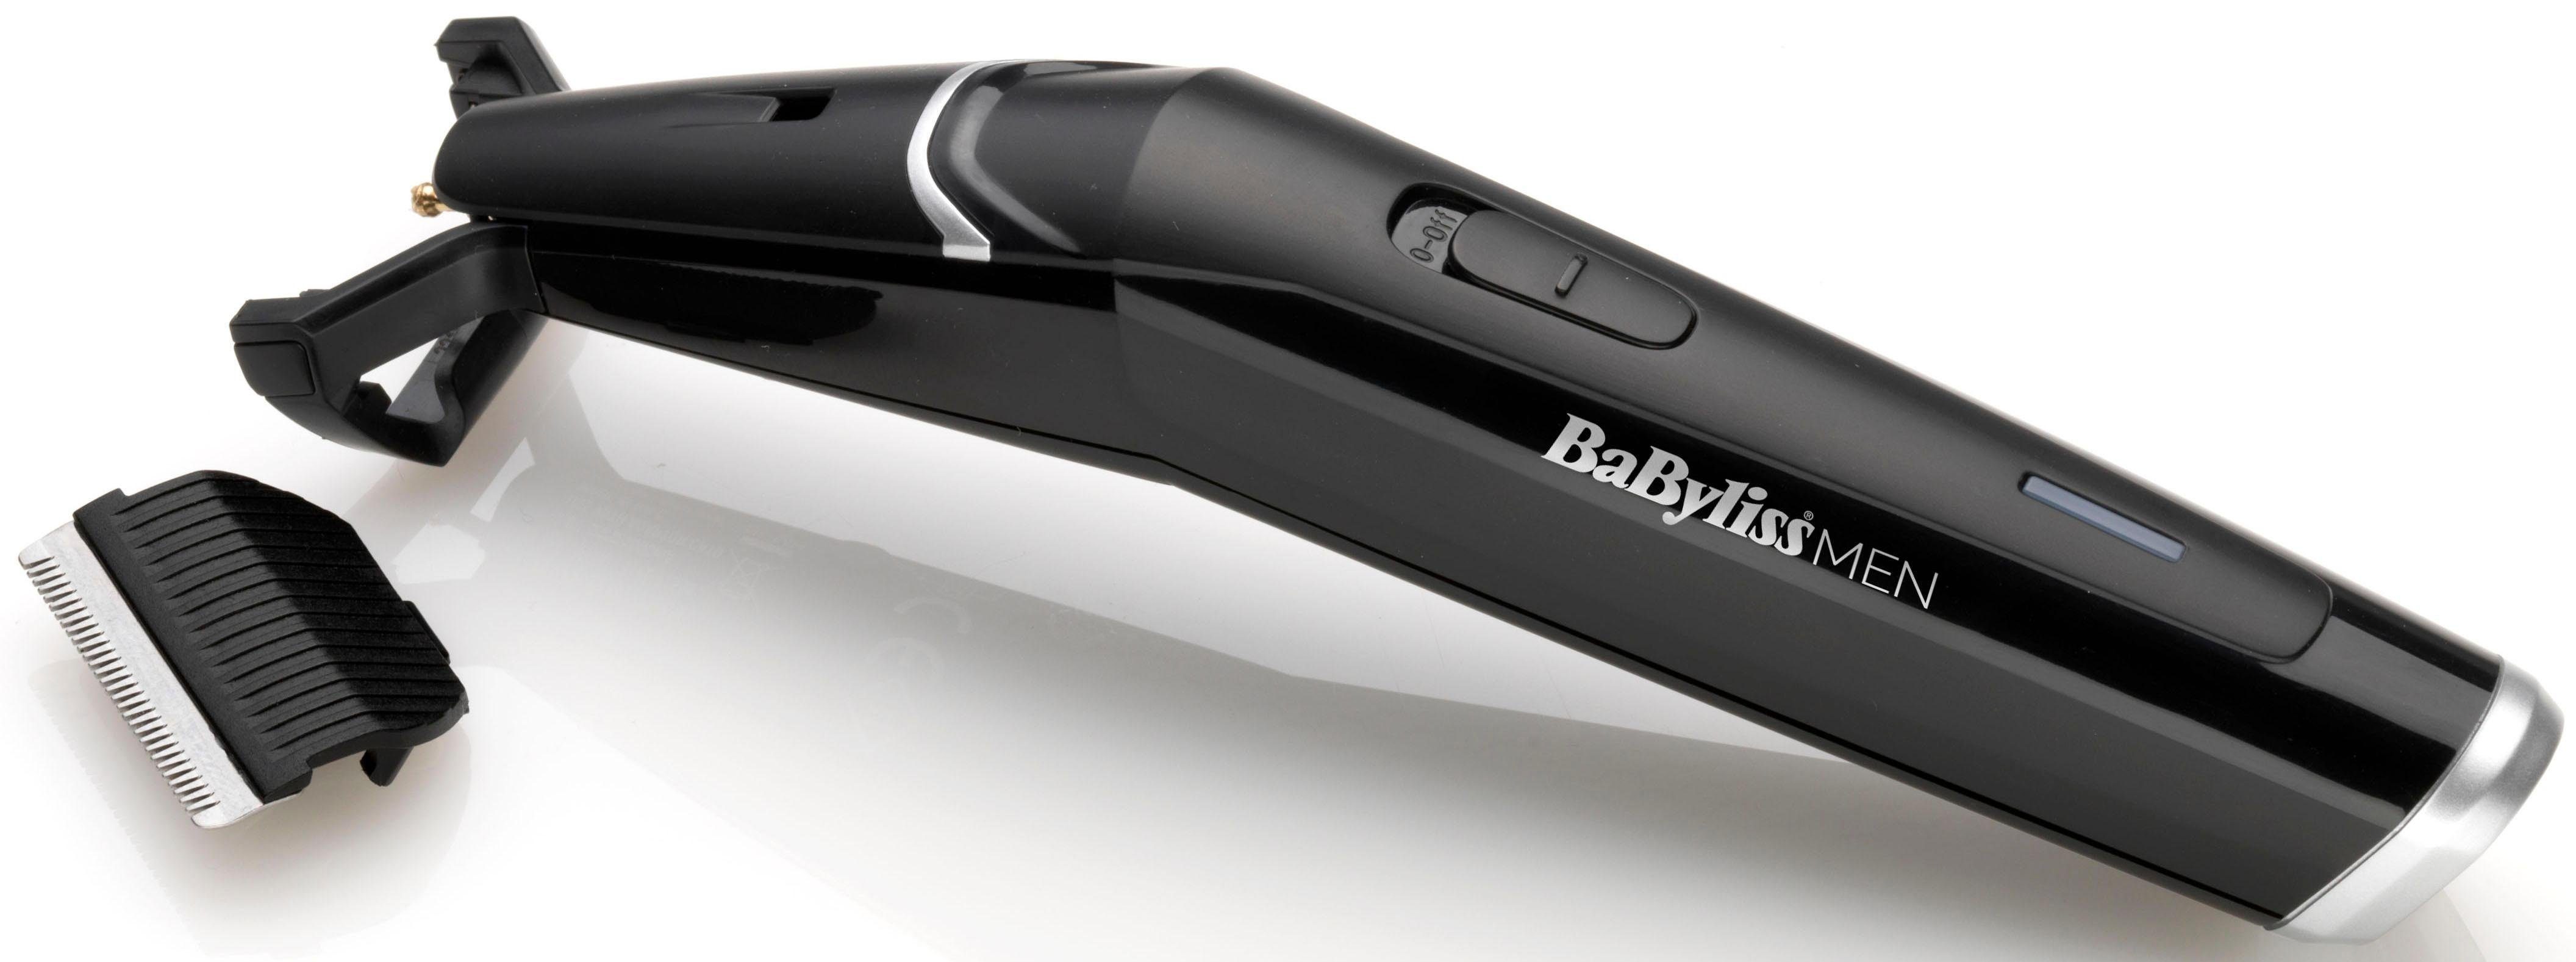 BaByliss Bartschneider T881E - Etui 0,5 Beard, MEN Pro inkl. 12mm